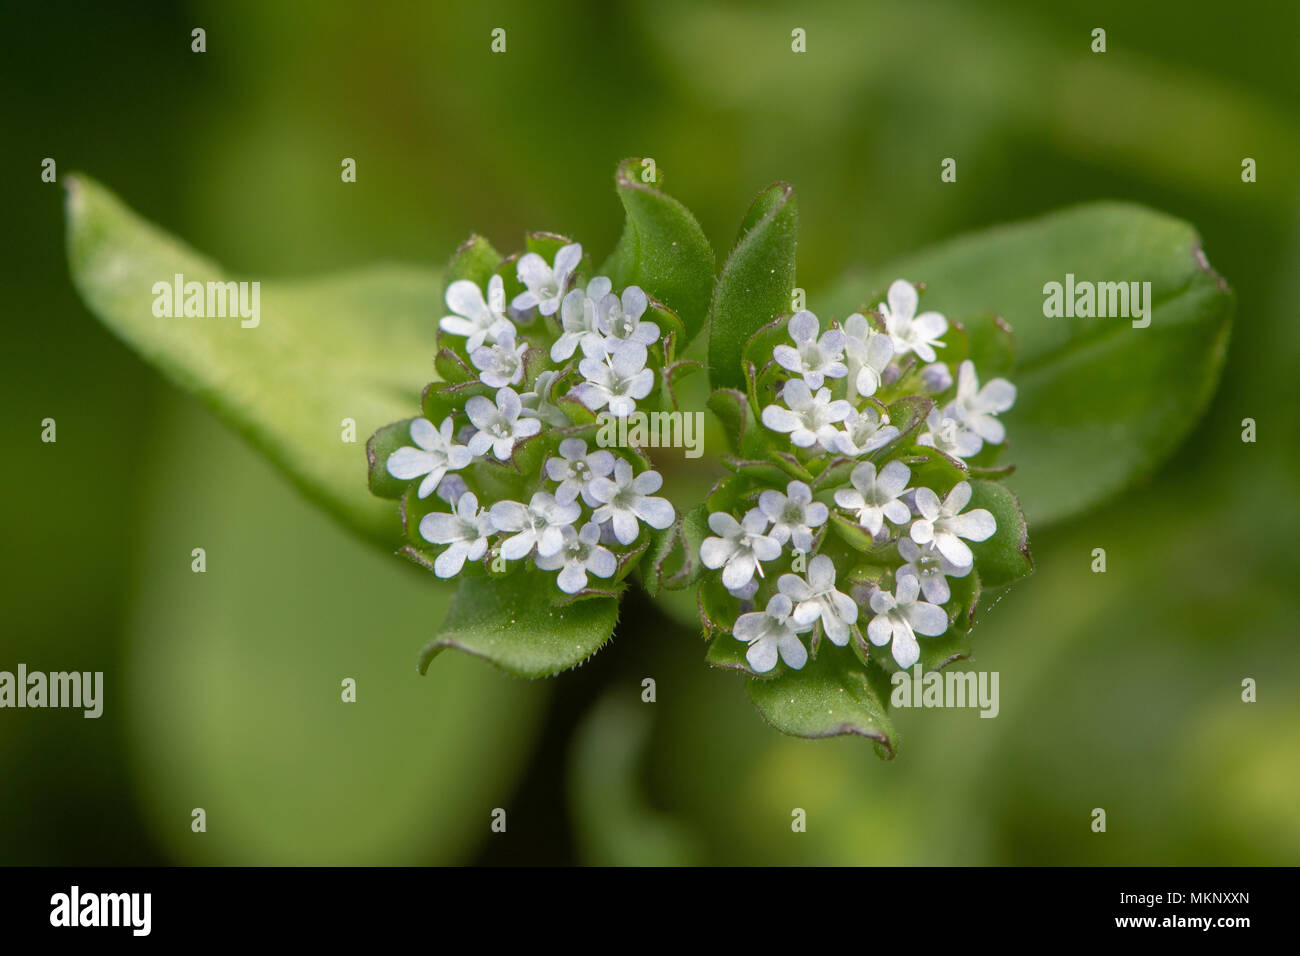 La mâche (Valerianella locusta) fleurs à partir de ci-dessus. De plus en plus faible de la famille Caprifoliaceae, alias mâche Banque D'Images